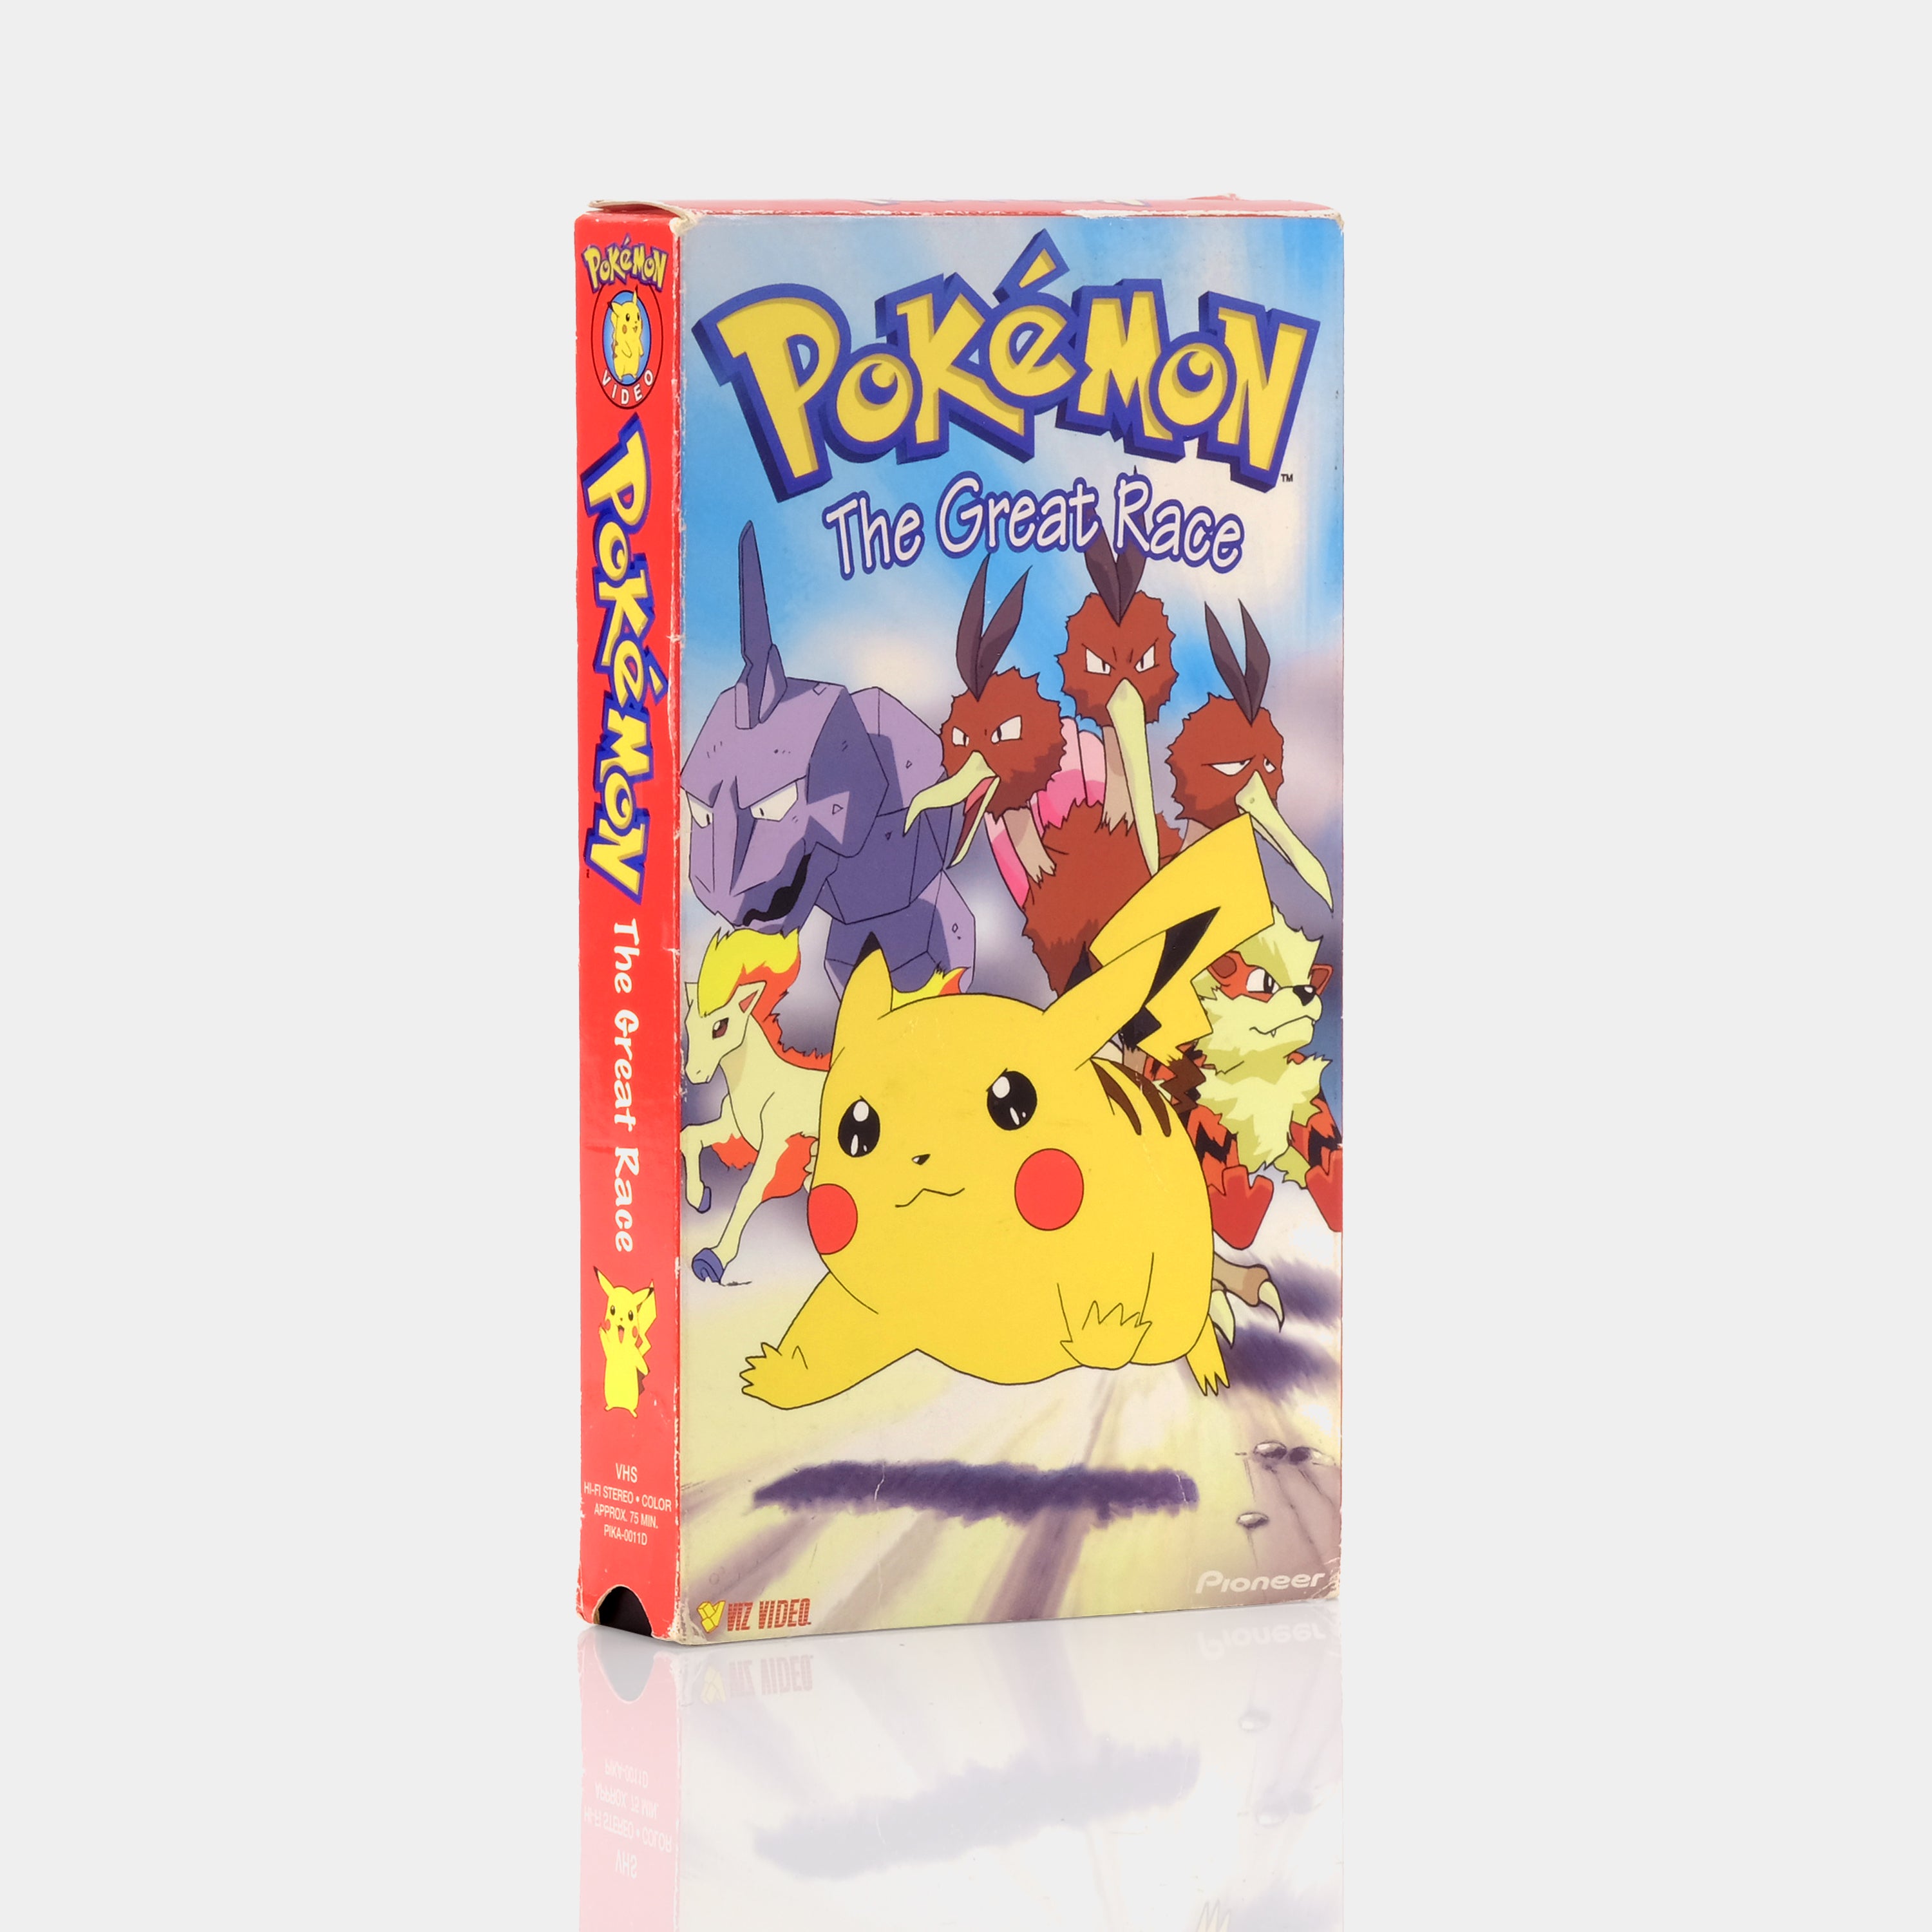 Pokémon: The Great Race VHS Tape